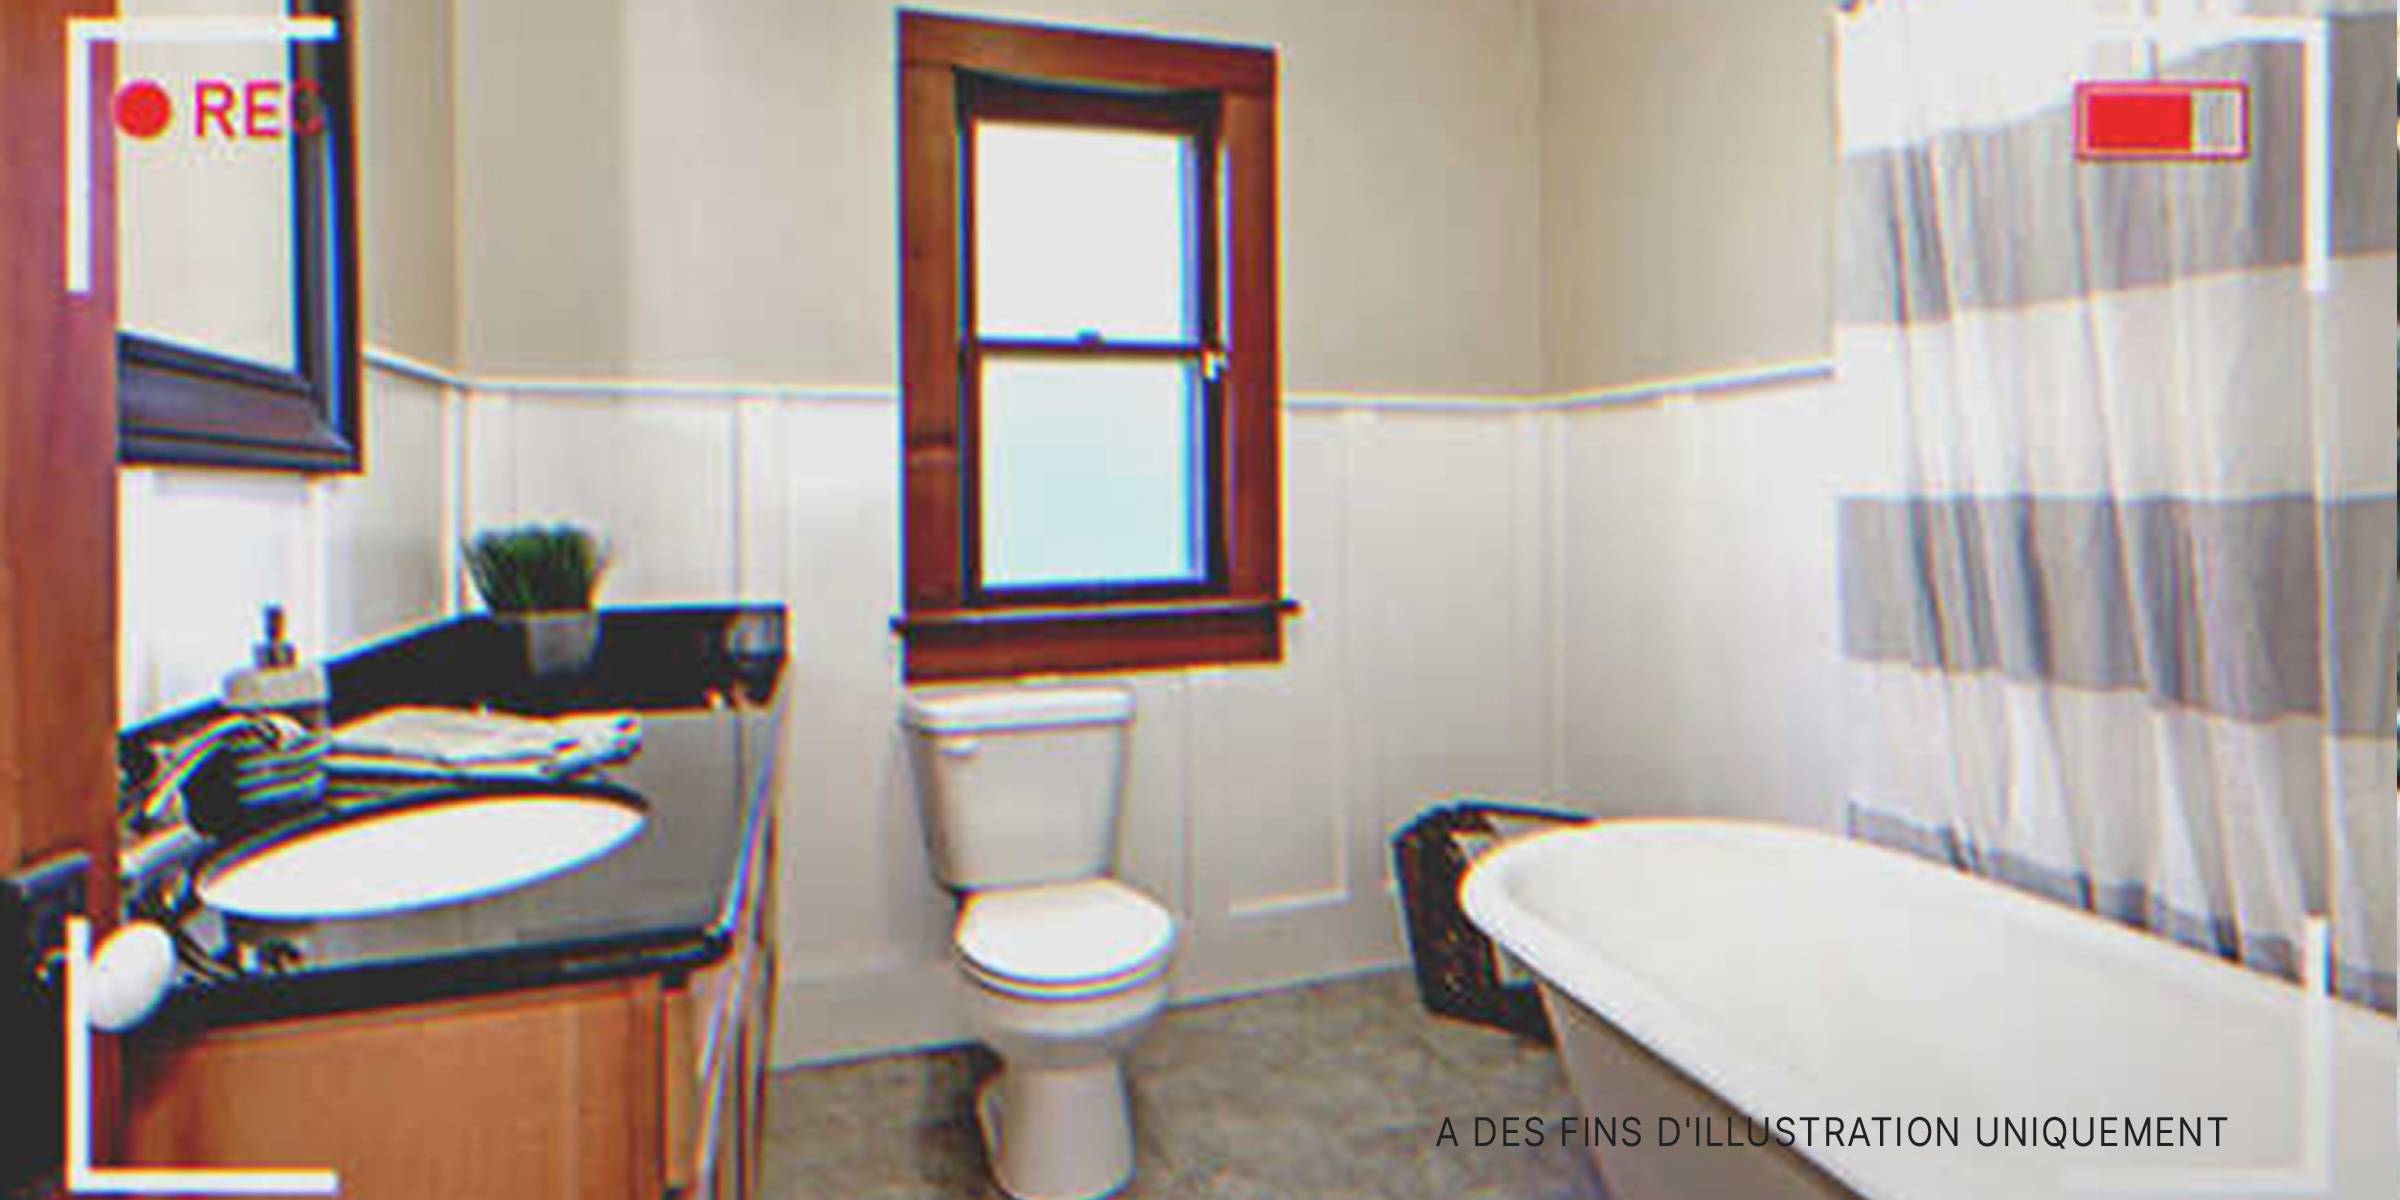 Une salle de bain | Source : Shutterstock